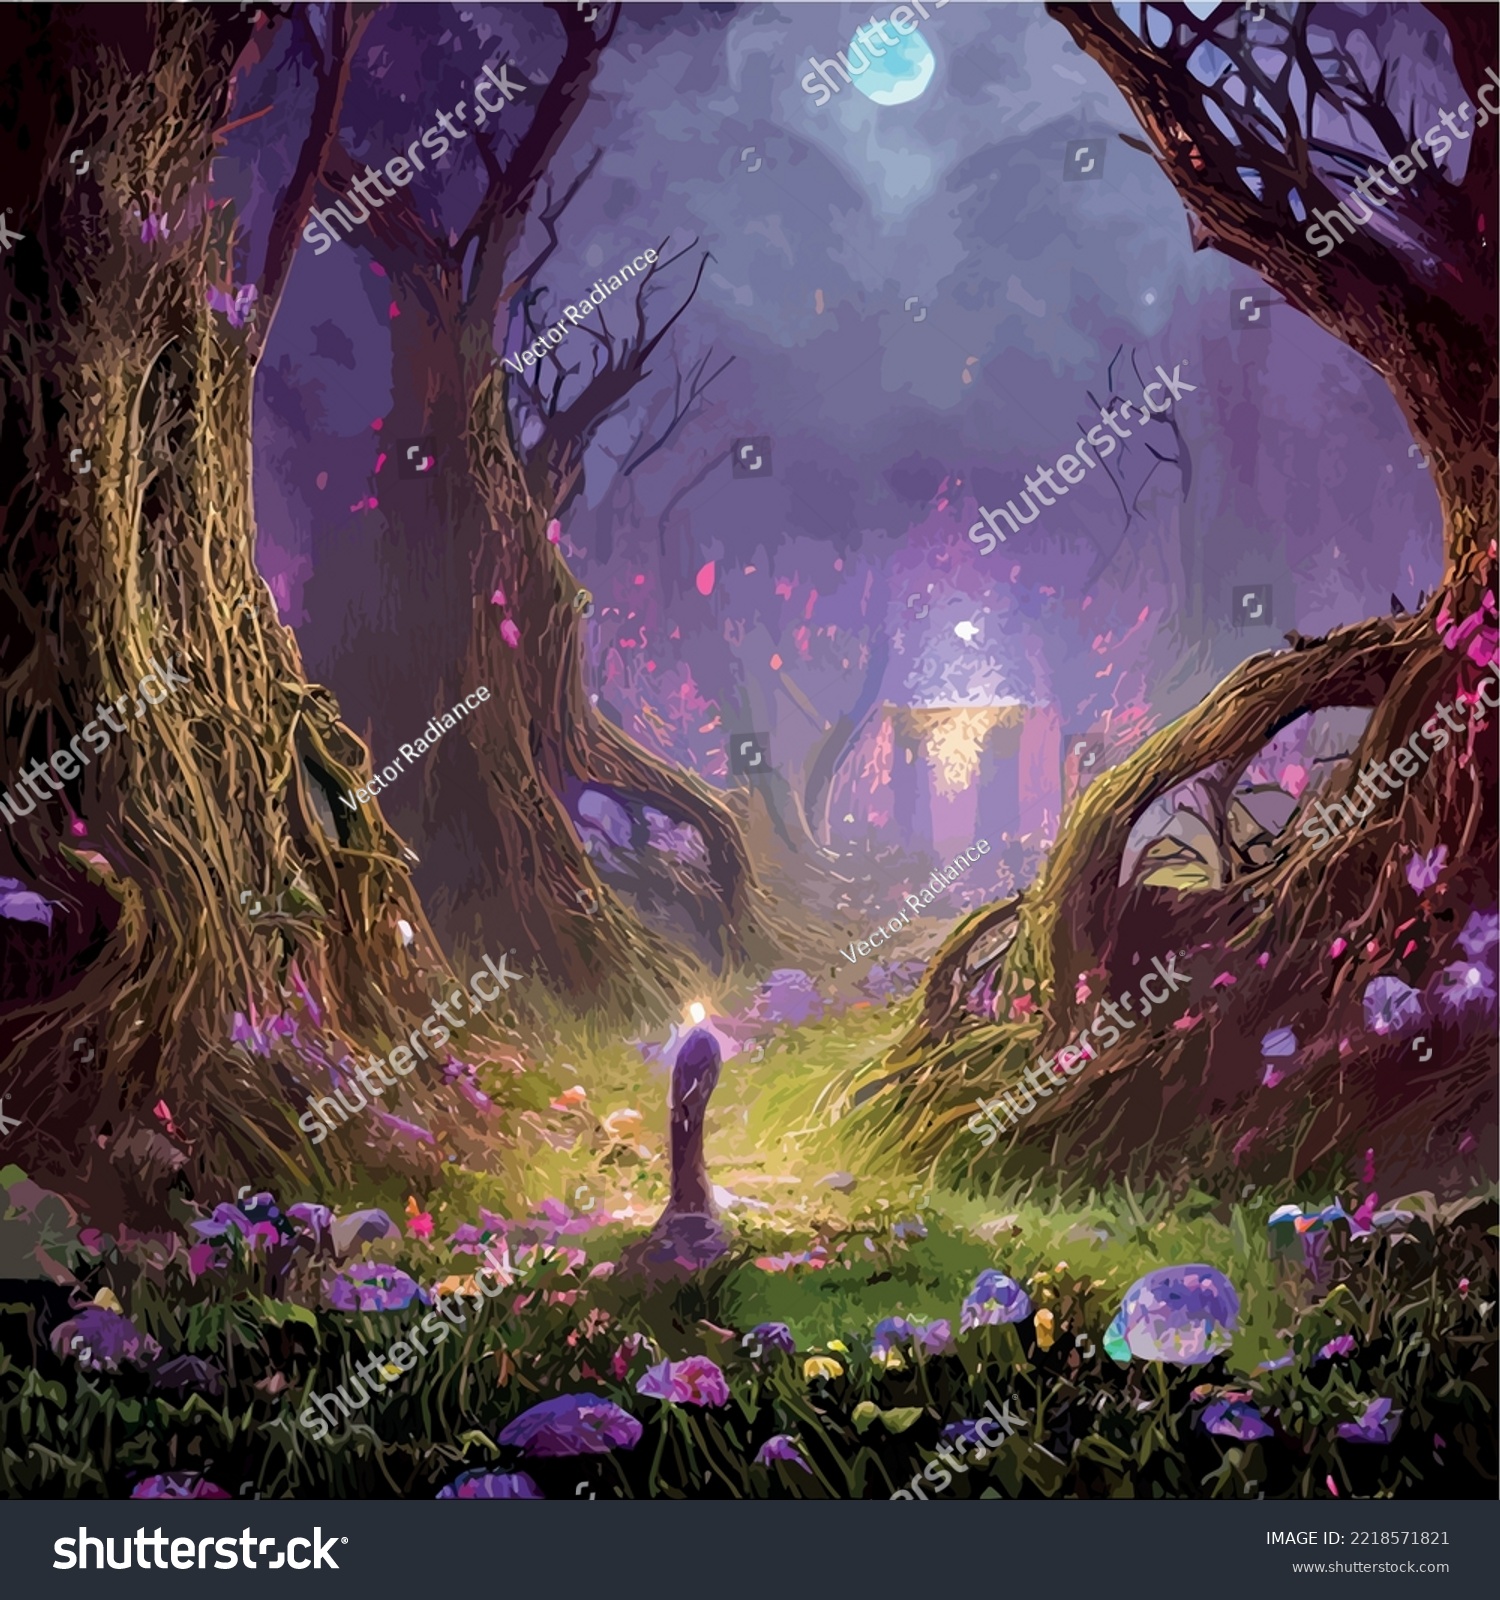 SVG of surreal mushroom landscape, fantasy wonderland landscape with mushrooms moon. vector illustration. Dreamy fantasy mushrooms in magical forest. illustration for book cover. Amazing nature landscape svg